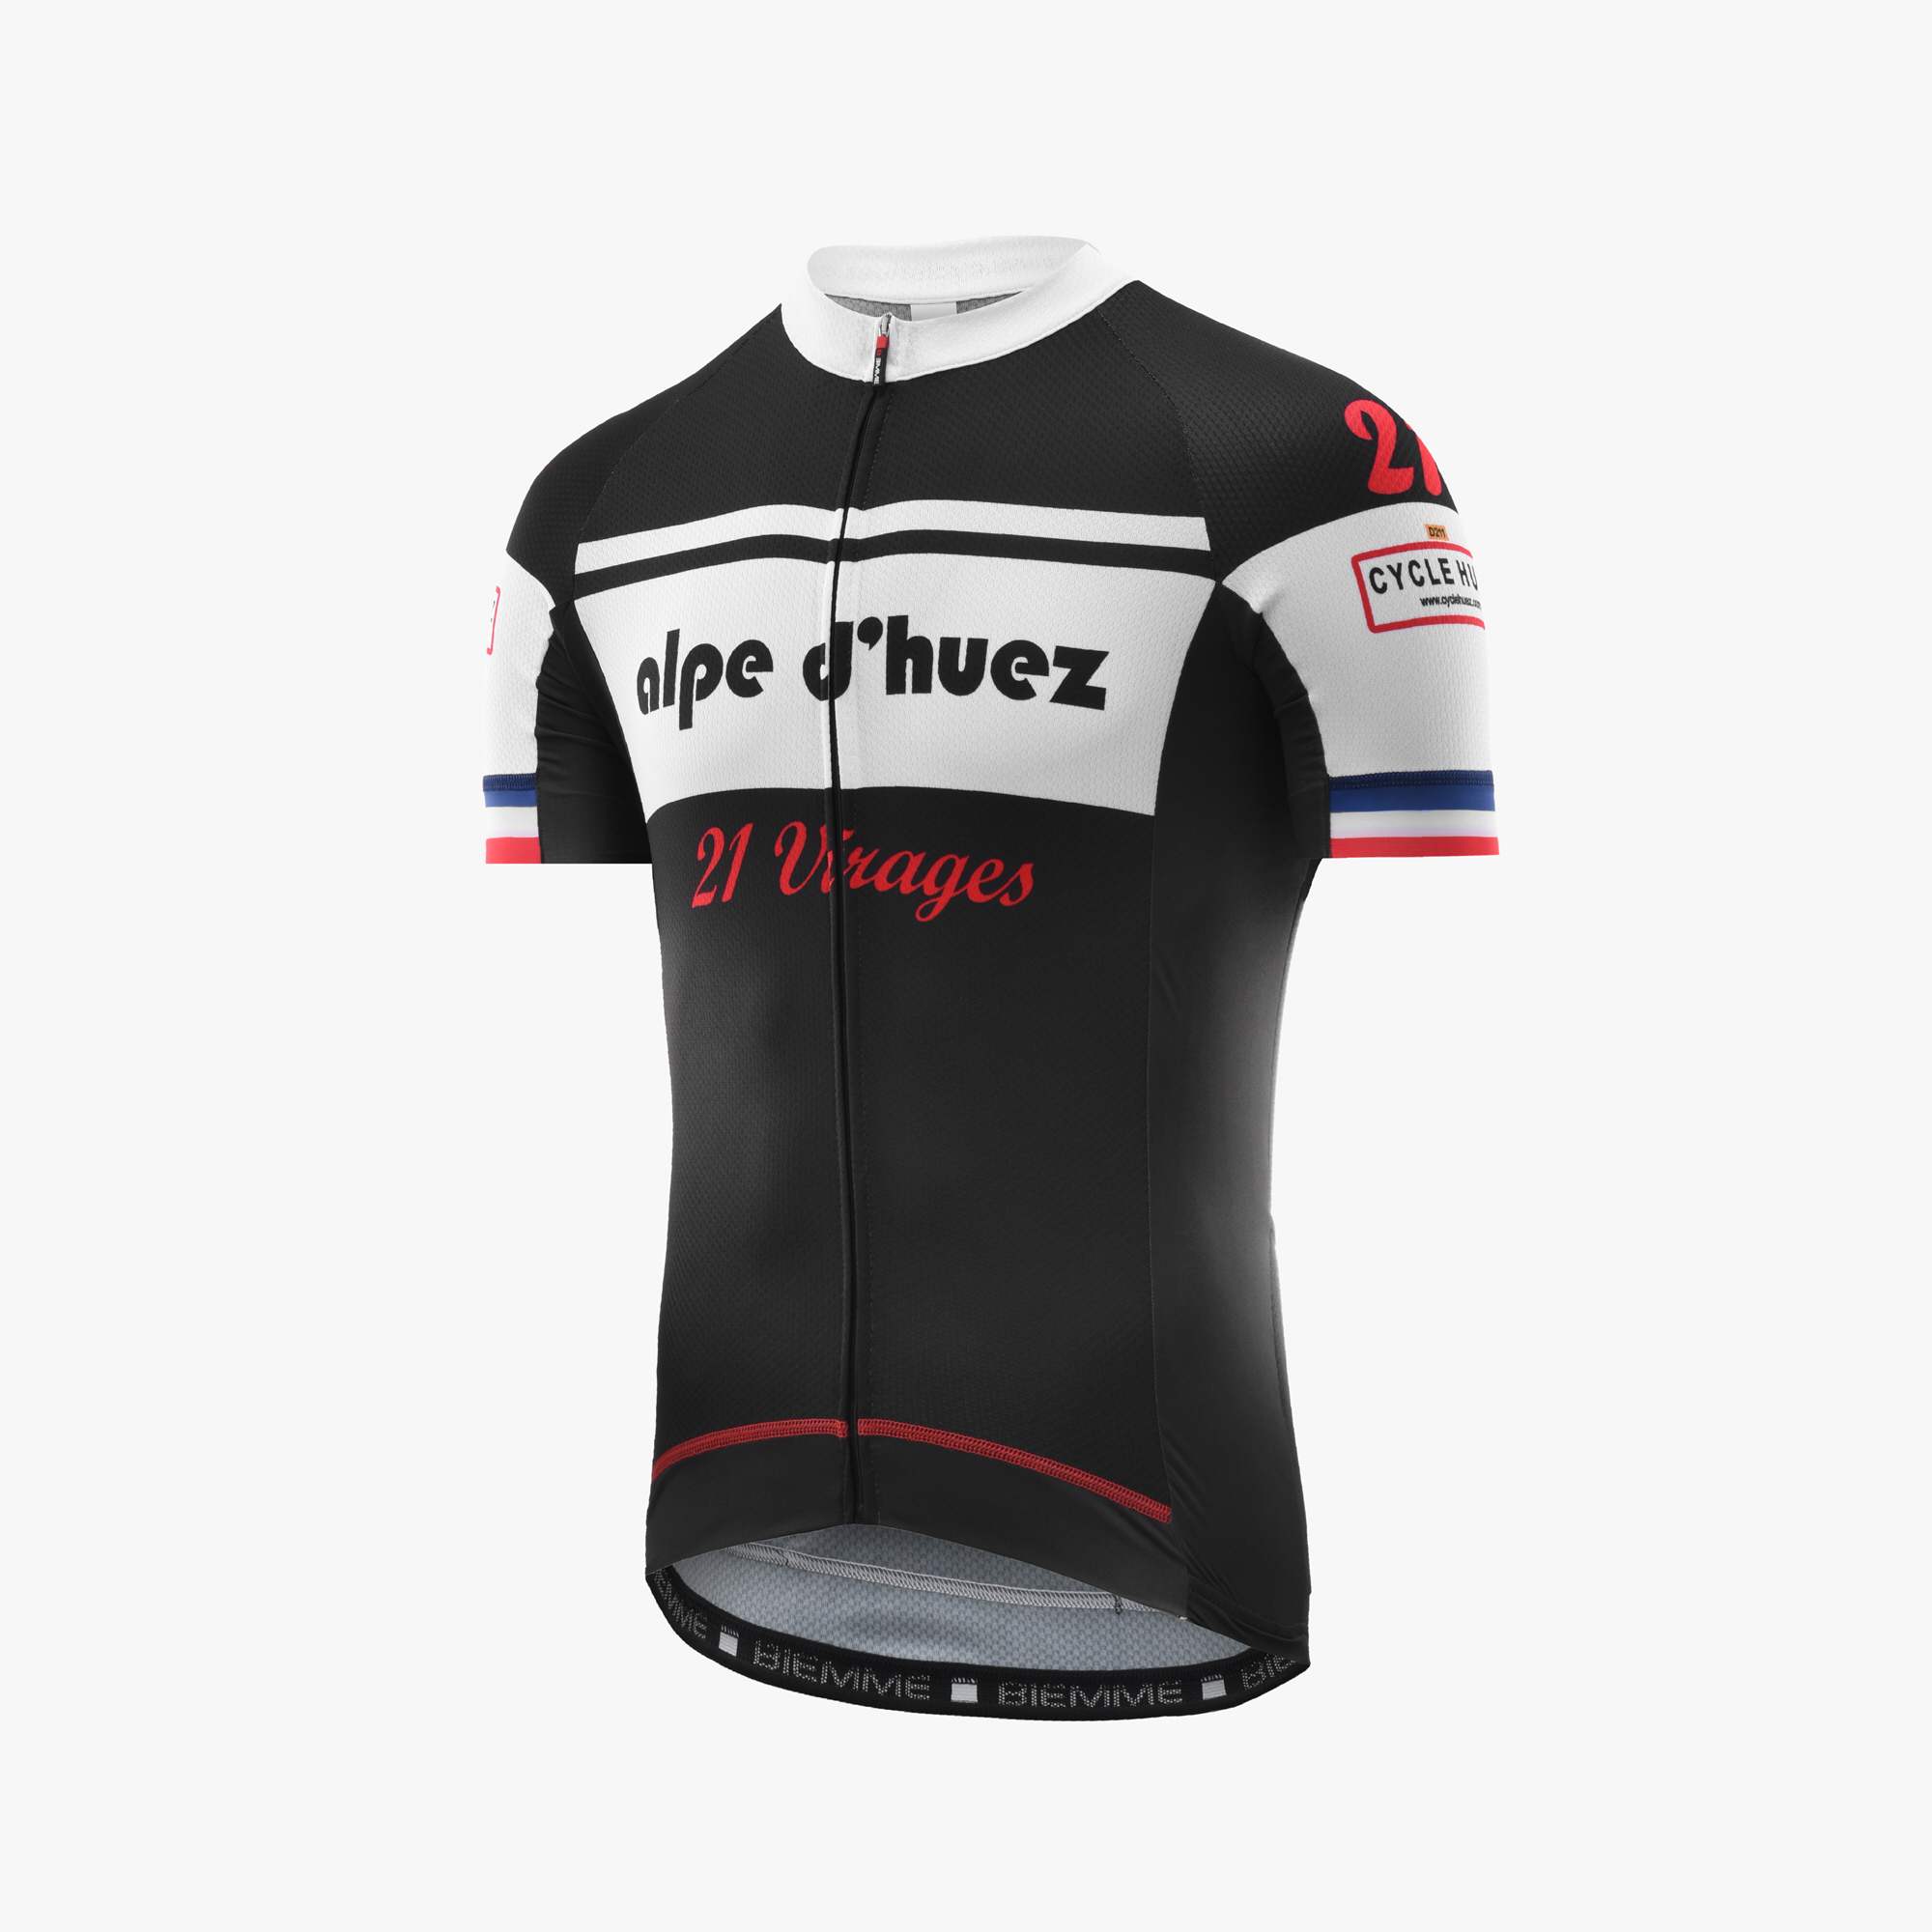 Details about   Classique Alpe d’Huez Cycling Jersey Men’s Size Small Bike Jersey Tour de France 